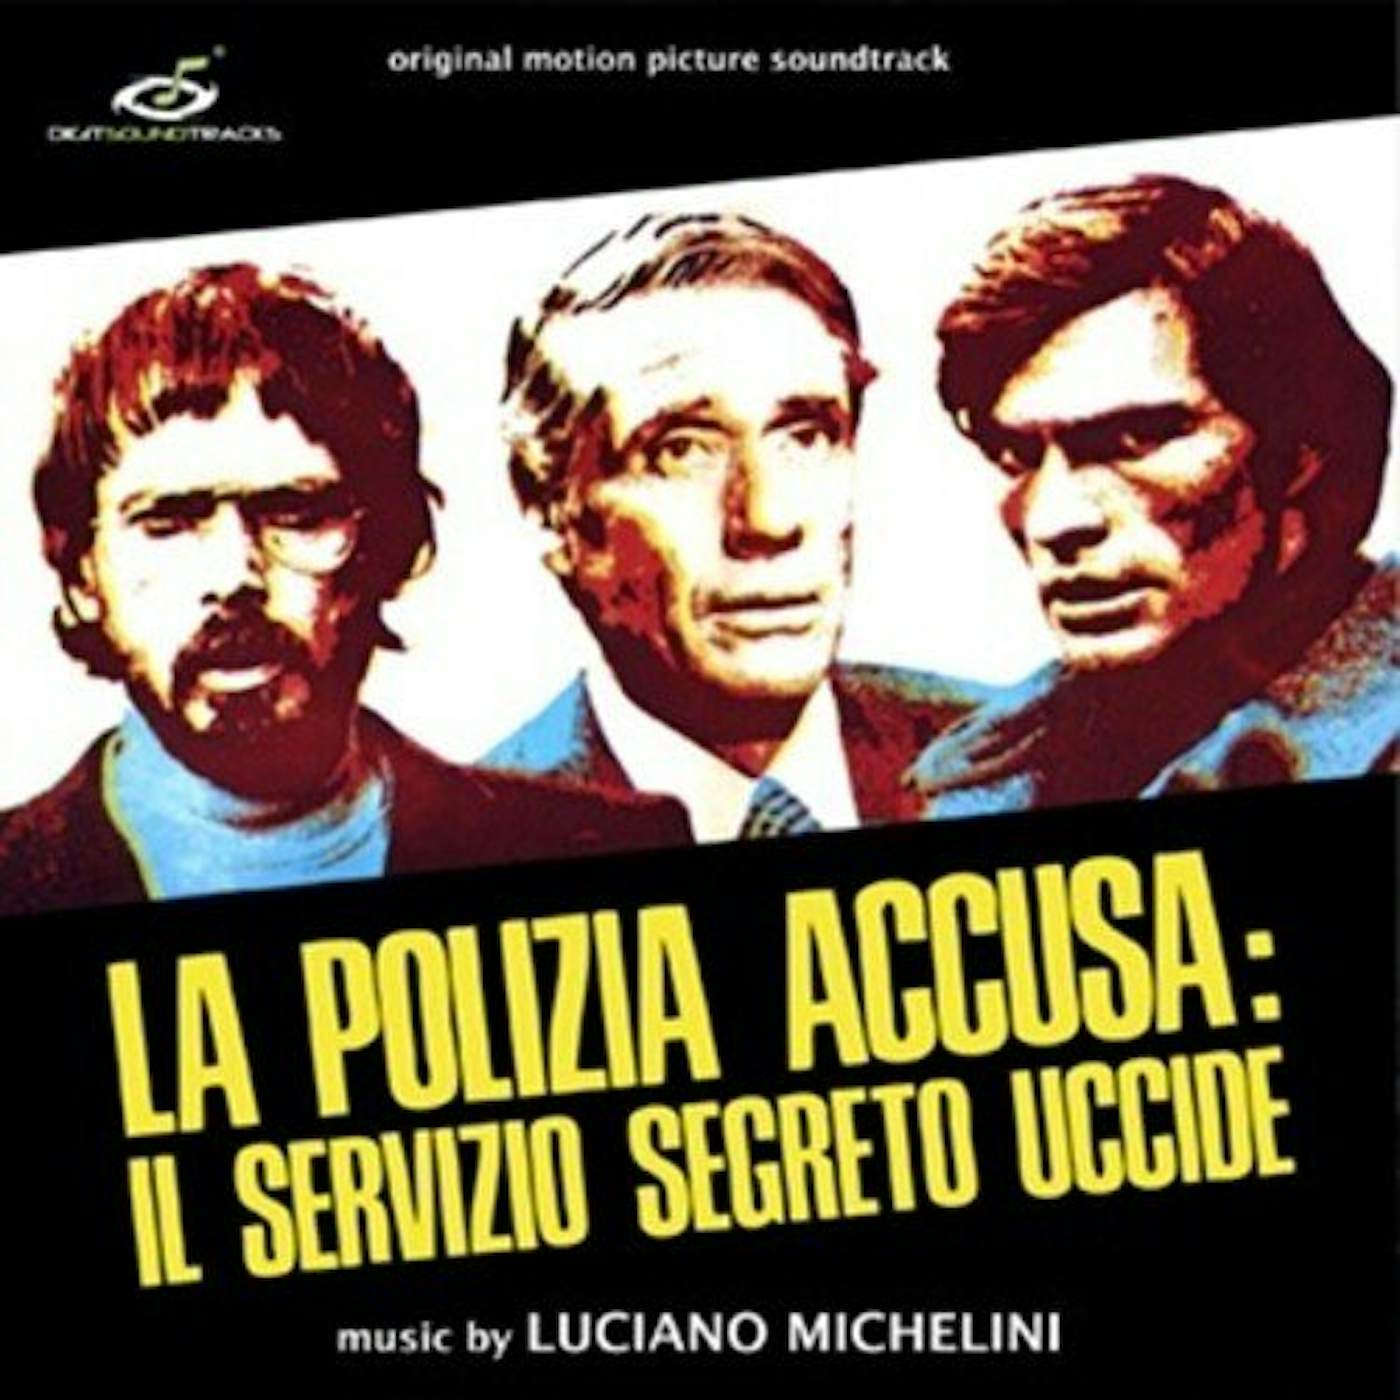 Luciano Michelini POLIZIA ACCUSA: SERVIZIO SEGRETO UCCIDE - Original Soundtrack Vinyl Record